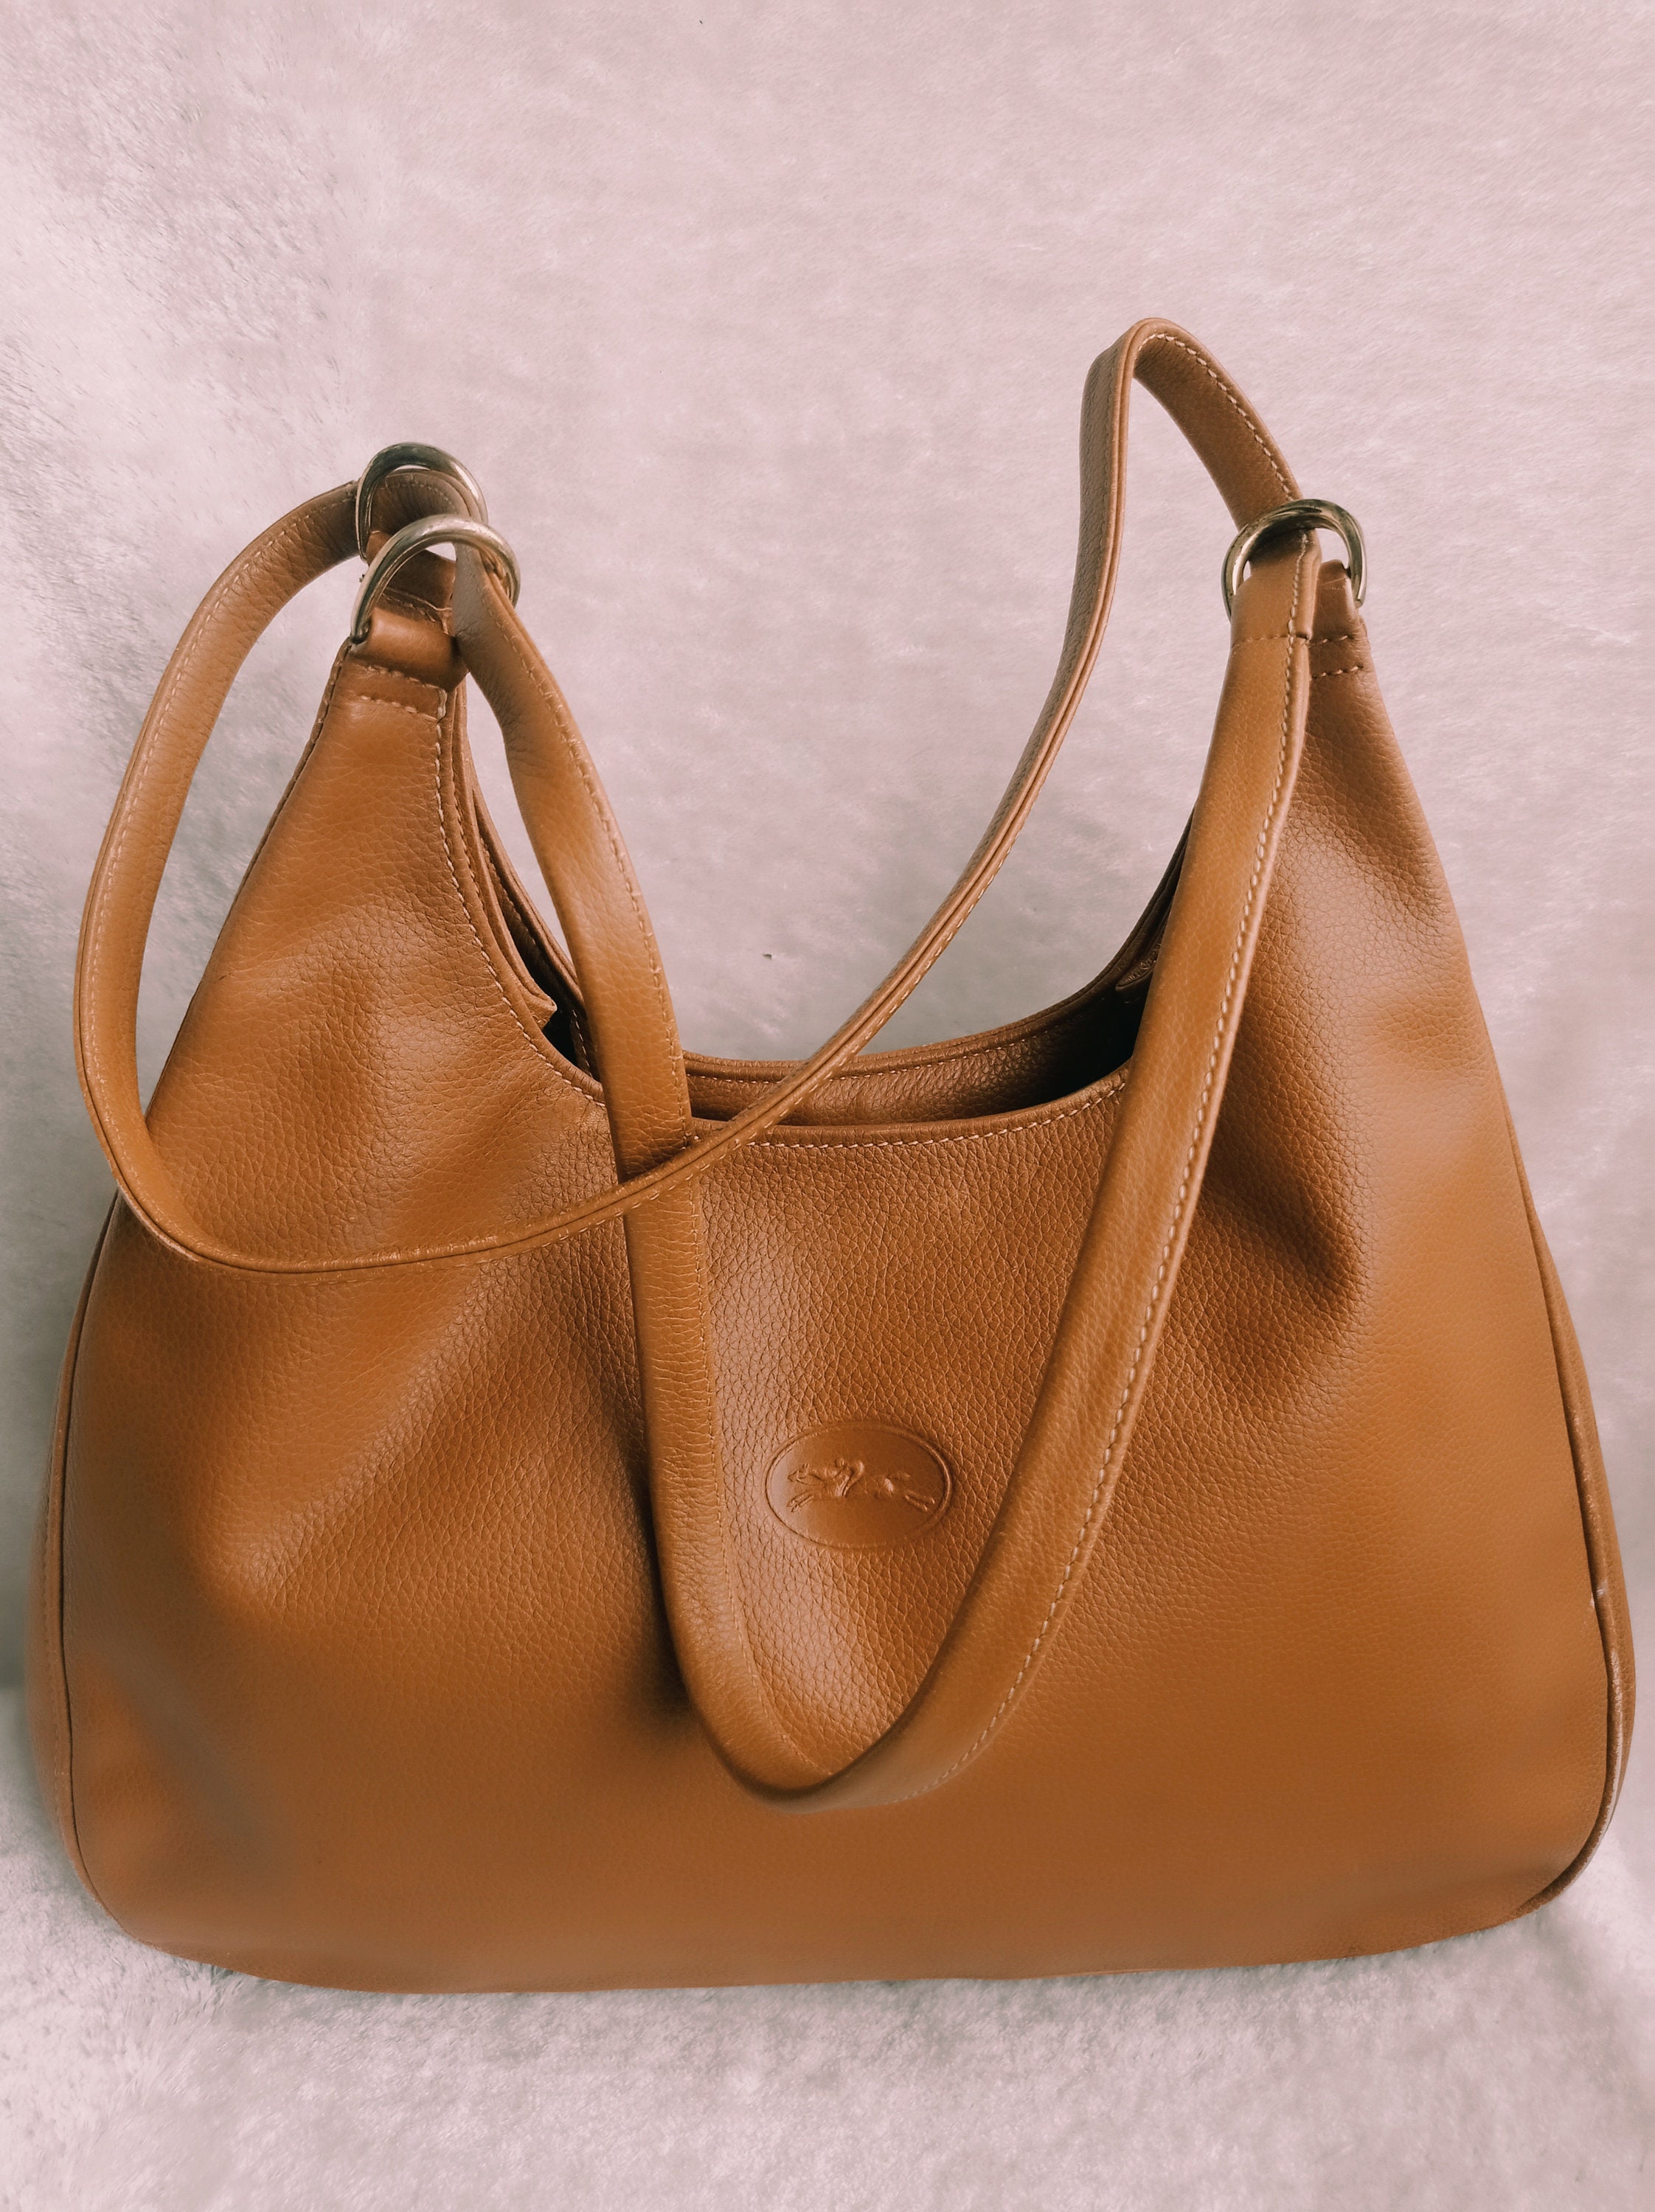 Longchamp Nylon Hobo Bag - ShopStyle